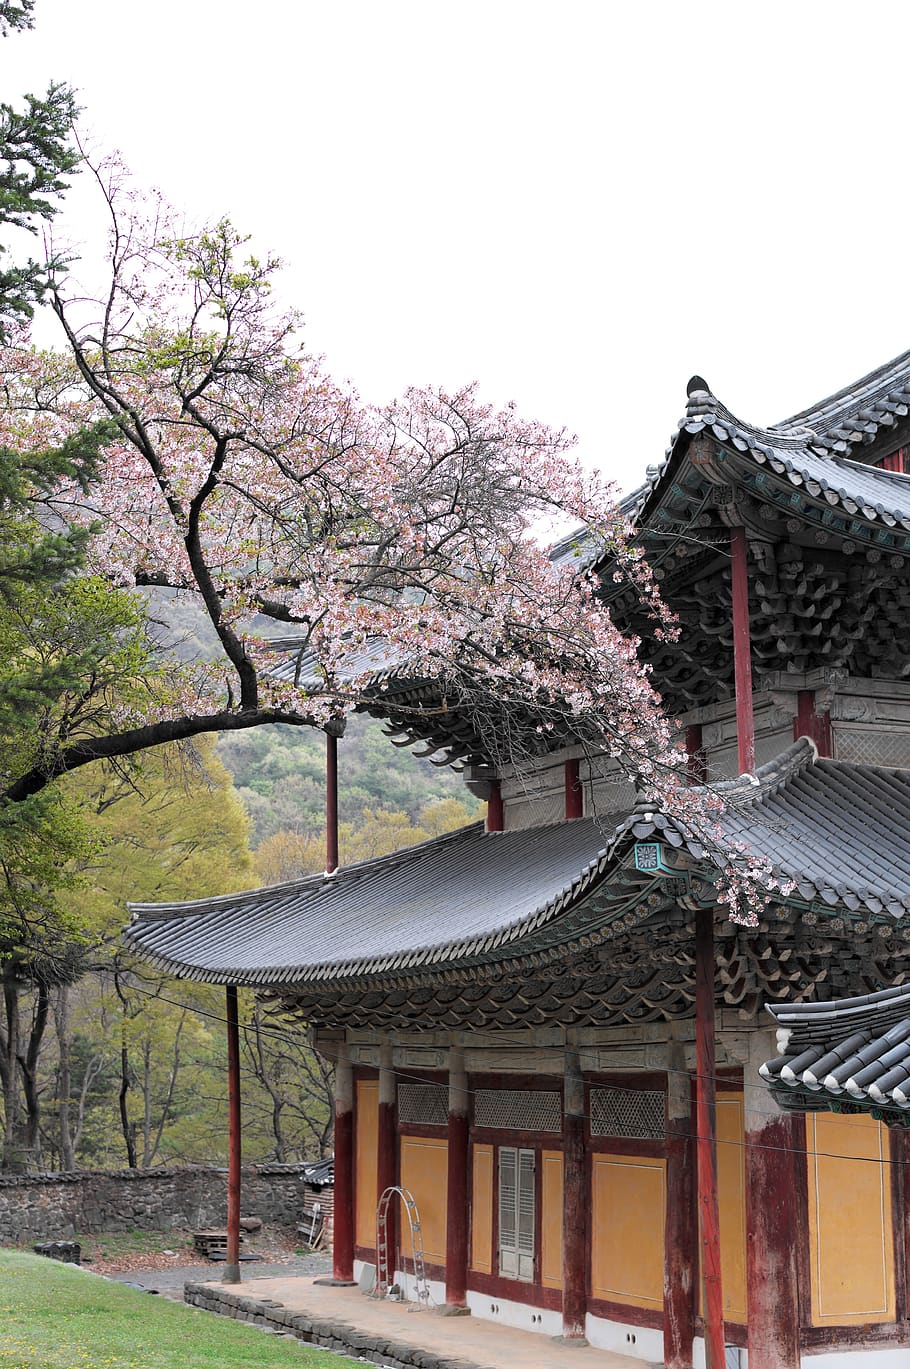 korea, temple, section, travel, buddhism, tourism, landscape